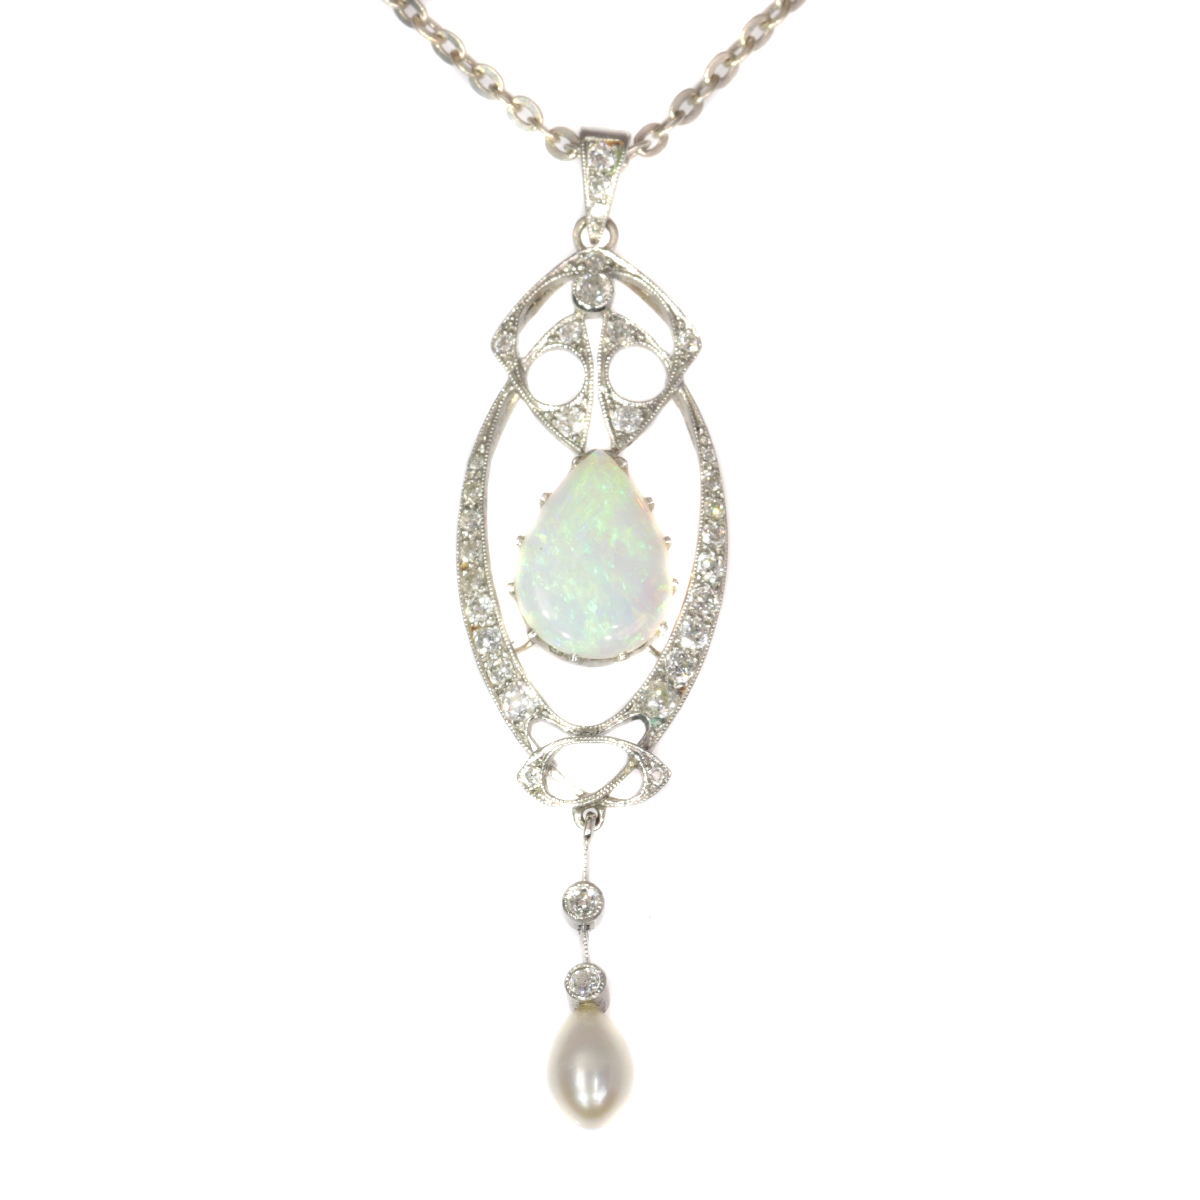 Vintage platinum Art Nouveau pendant with diamonds and large opal